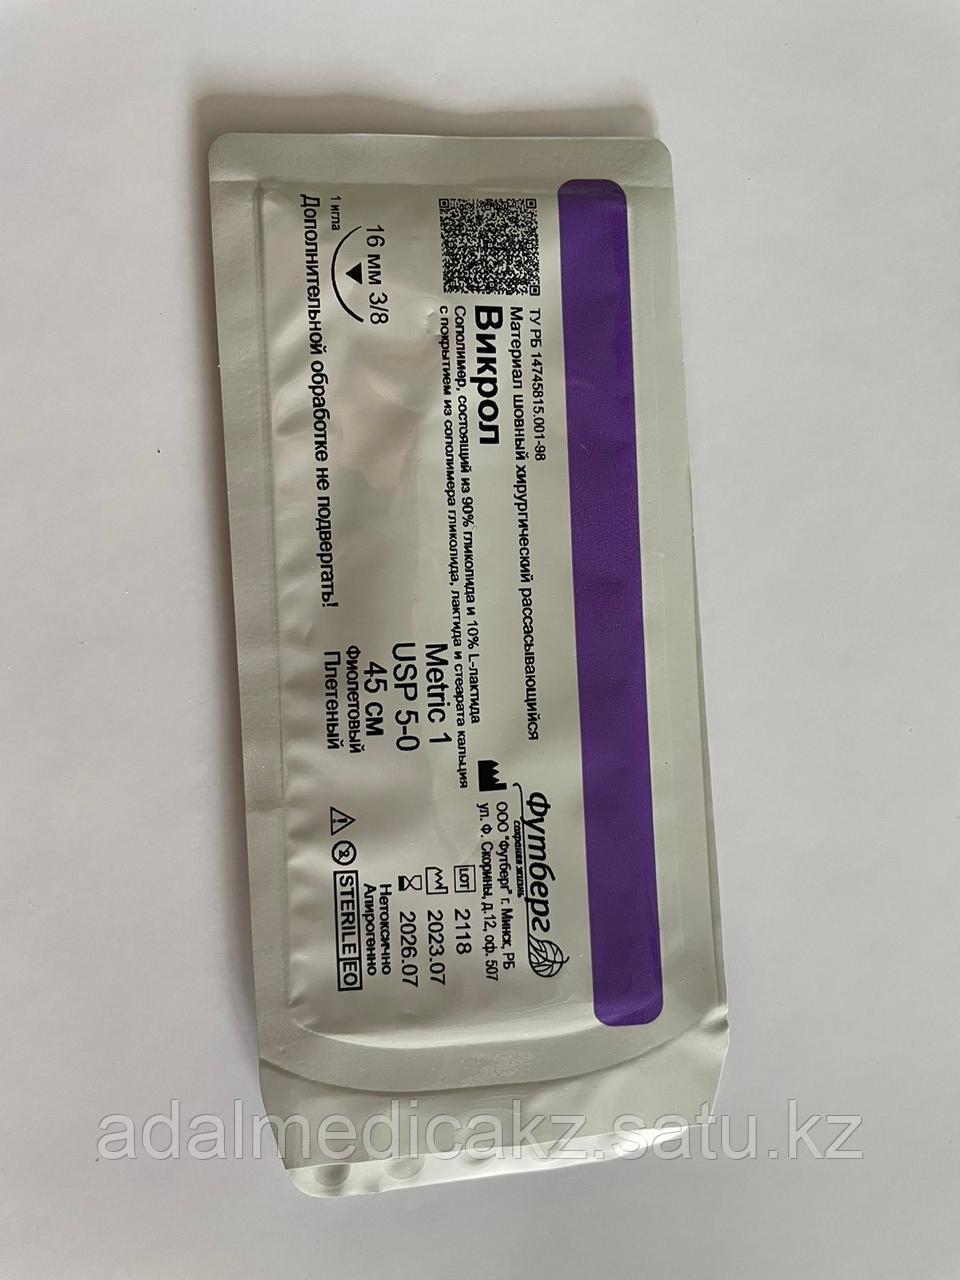 Викрол - синтетич.рассасывающаяся плетеная нить фиолет.цвета (Glicolide (90%) и L-лактида (10%) с покрытием